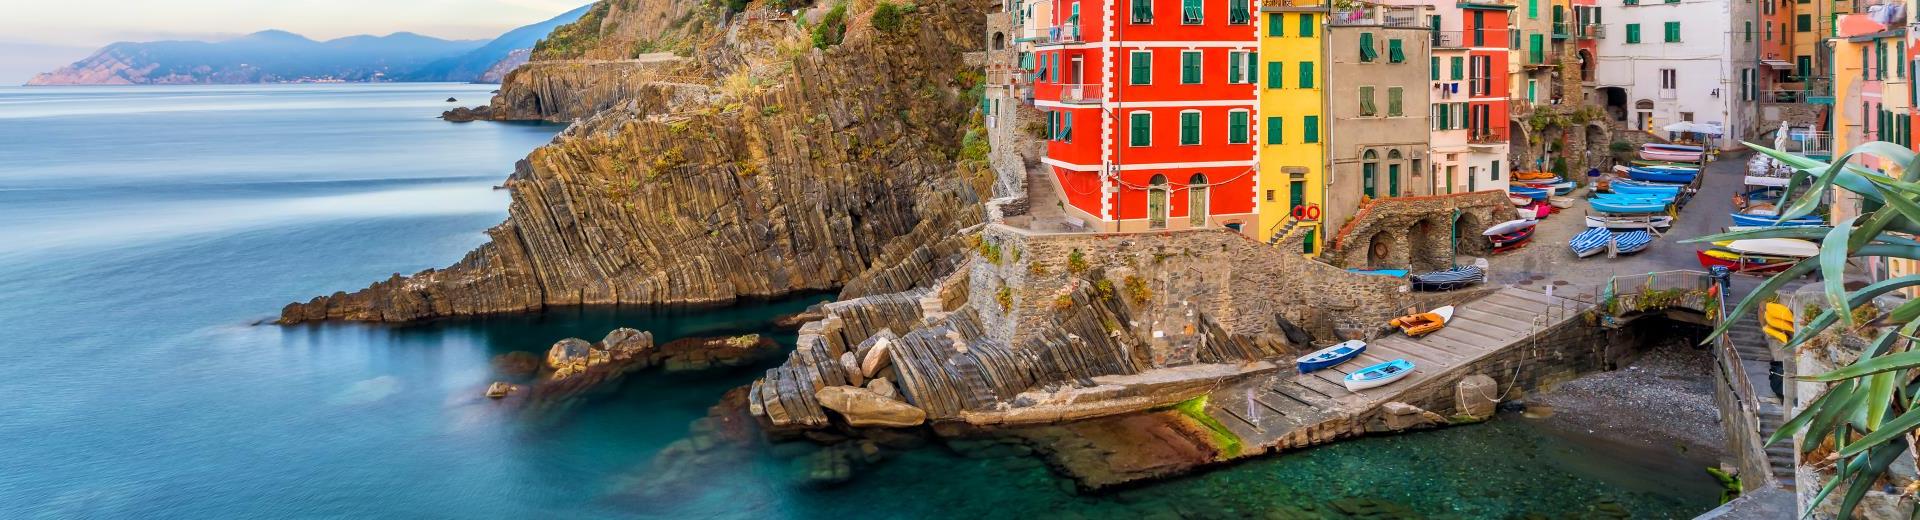 Vakantiehuis La Spezia – Gezellige vakantie aan de Italiaanse kust - EuroRelais